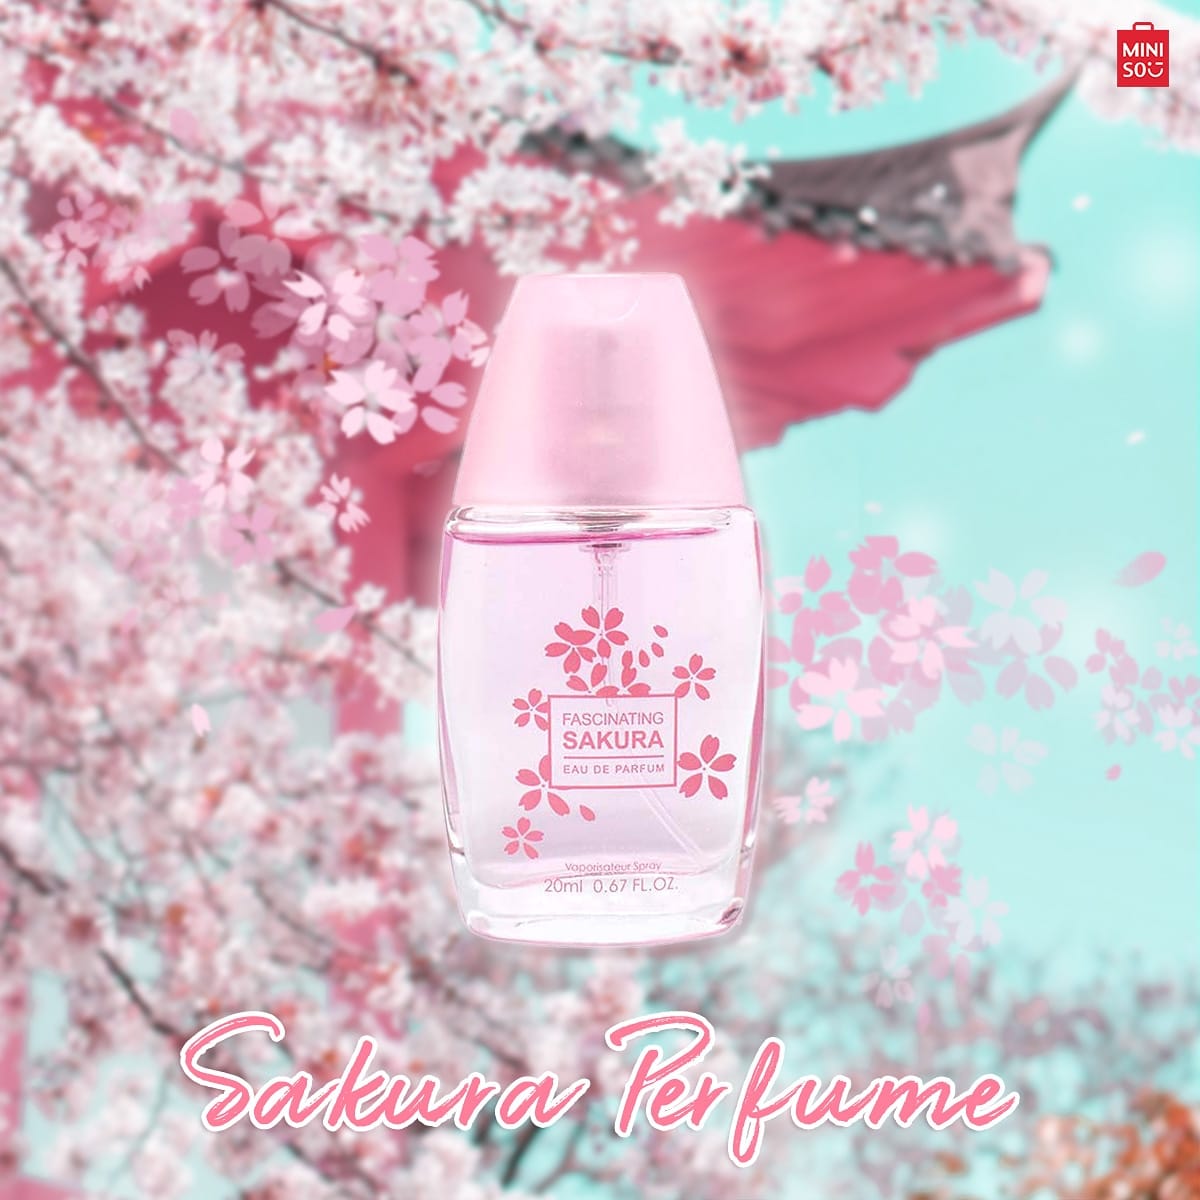 Сакура парфюм. Miniso Парфюм Sakura. Miniso fascinating Sakura Lady Perfume. Фаберлик Сакура духи. Romantic Pink Sakura духи.